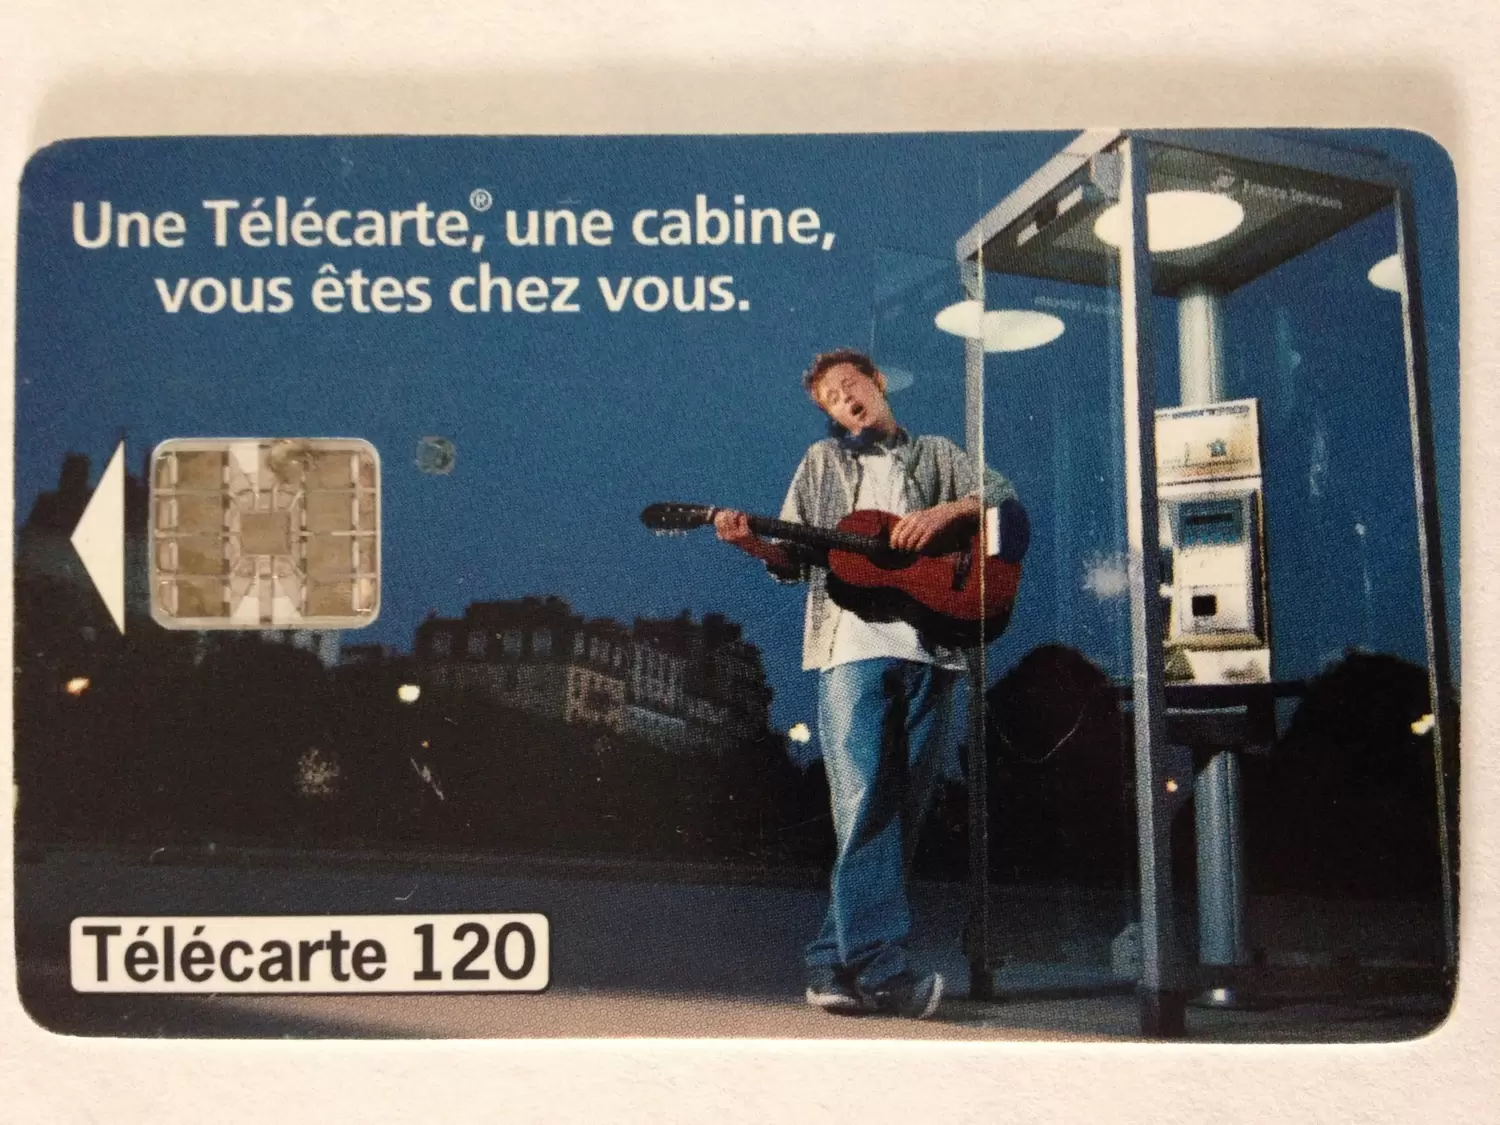 Télécartes - Une telecarte, une cabine, vous êtes chez vous